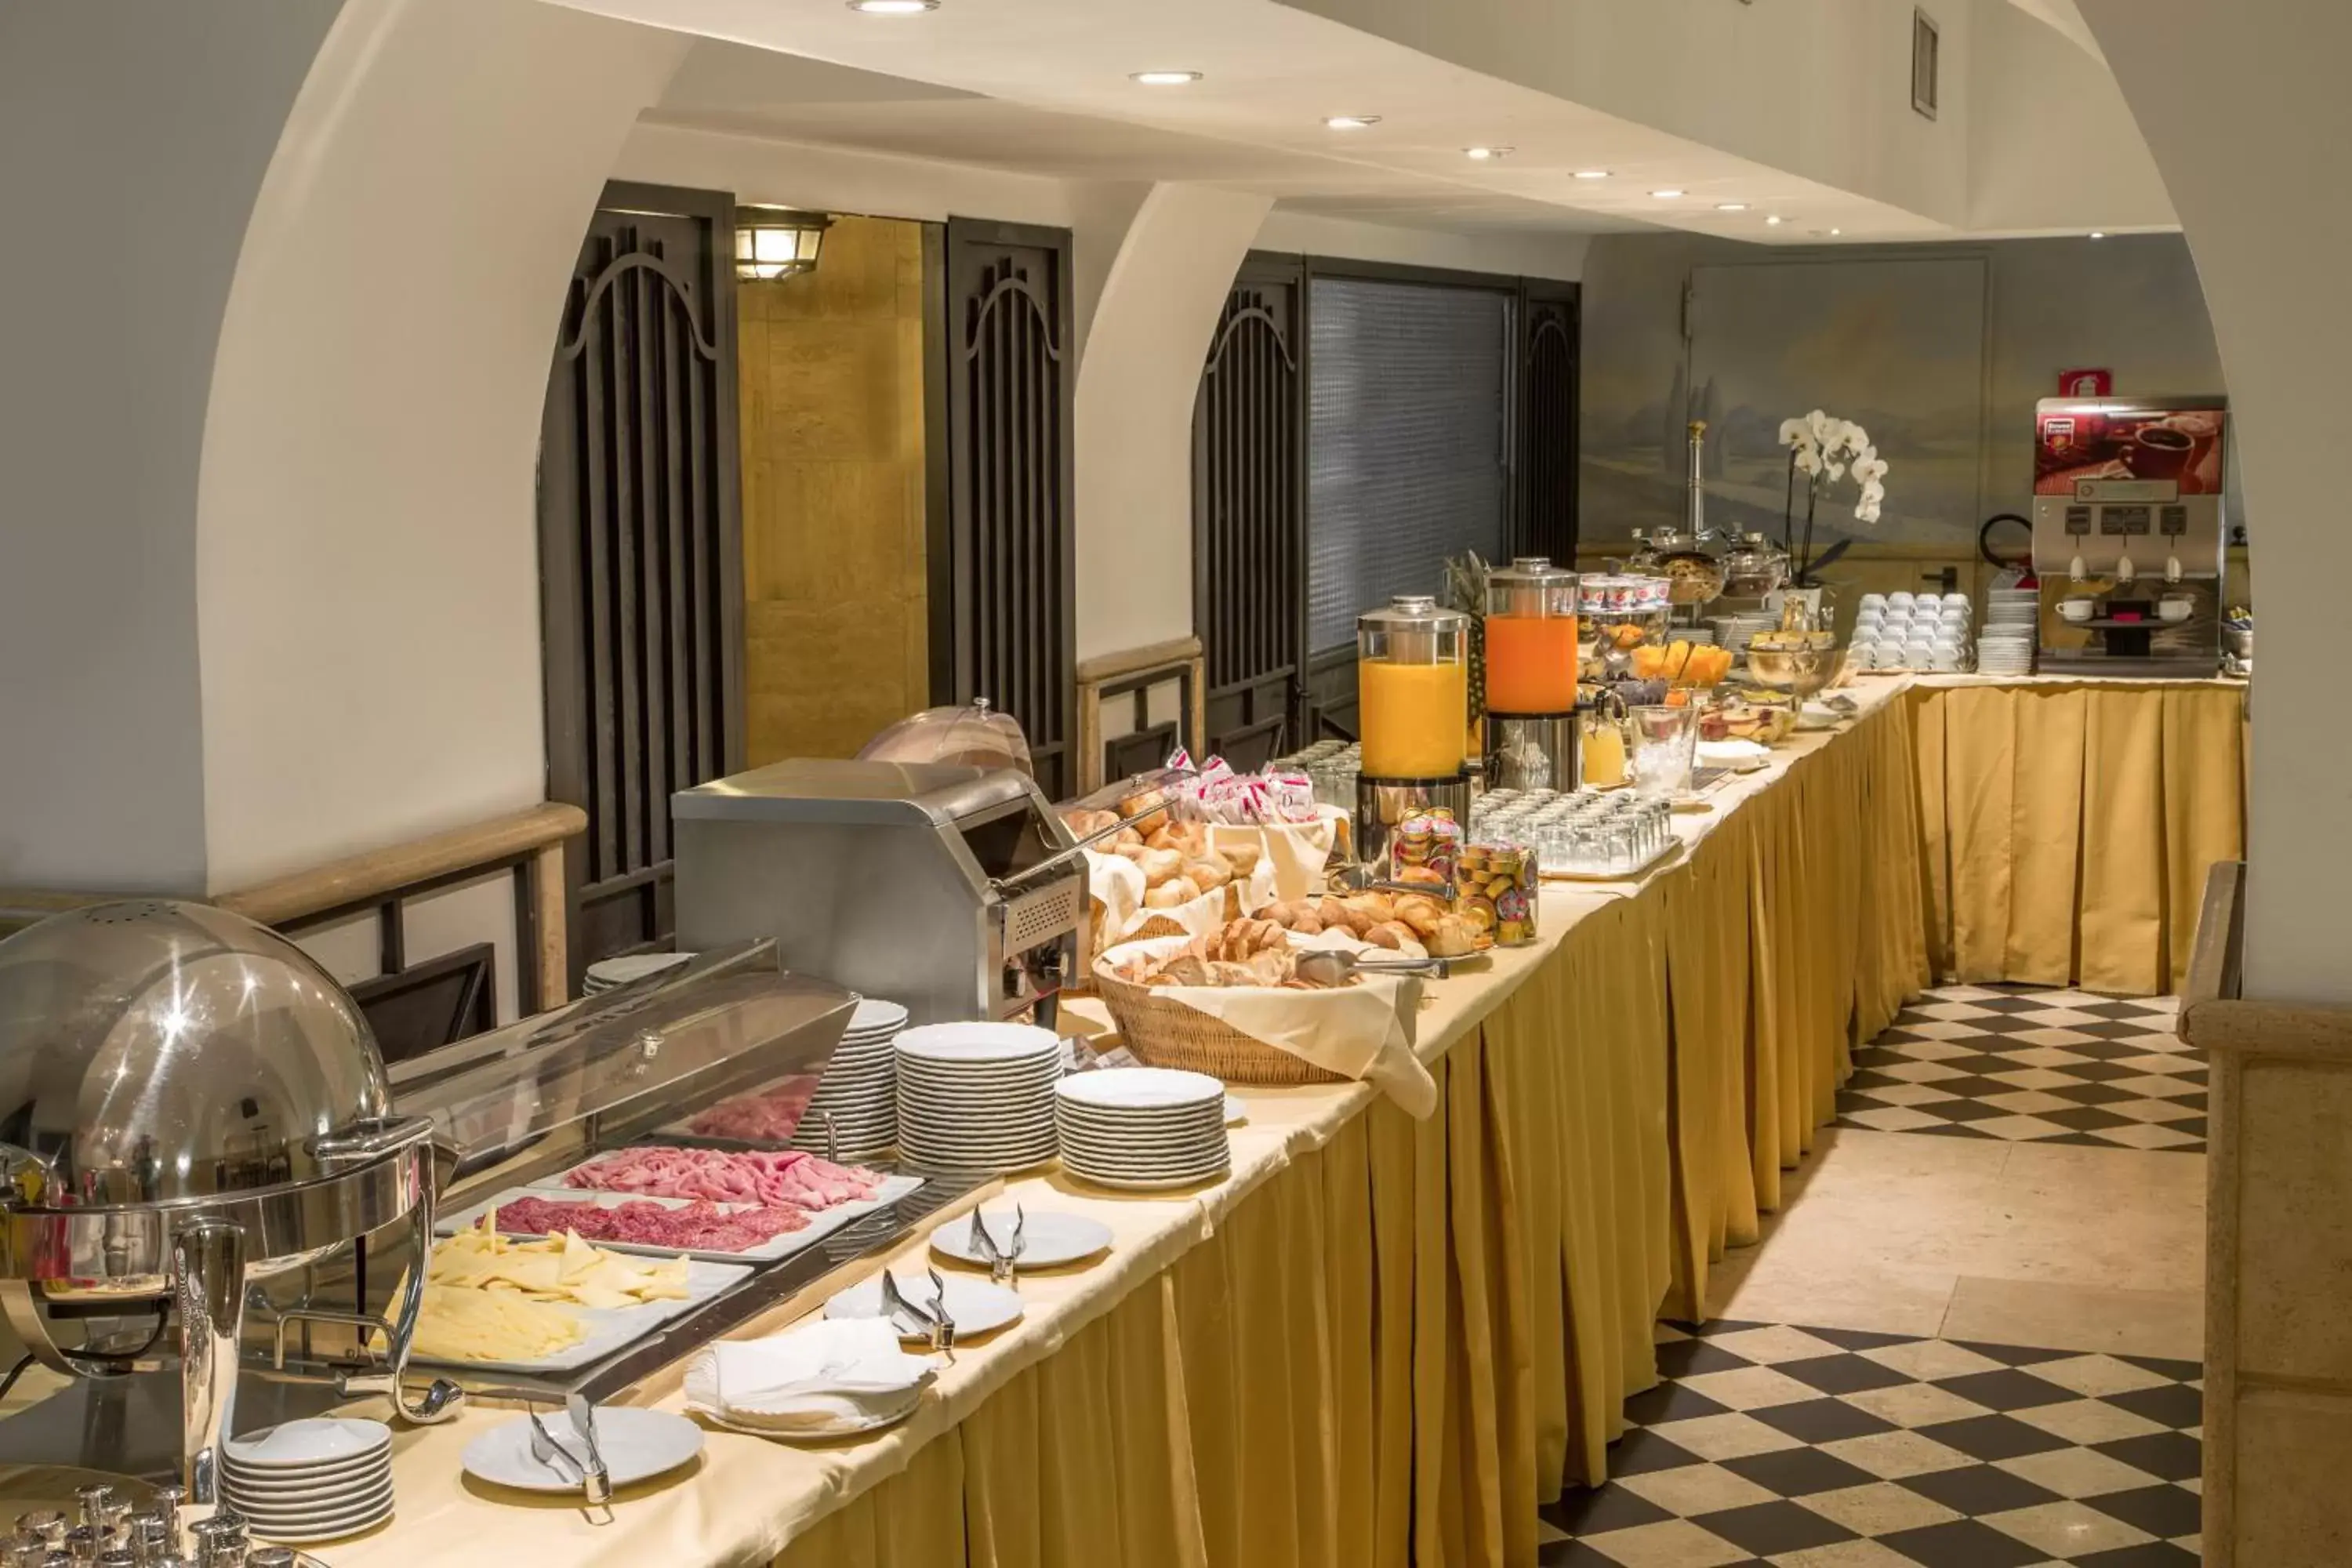 Buffet breakfast in Hotel Savoy